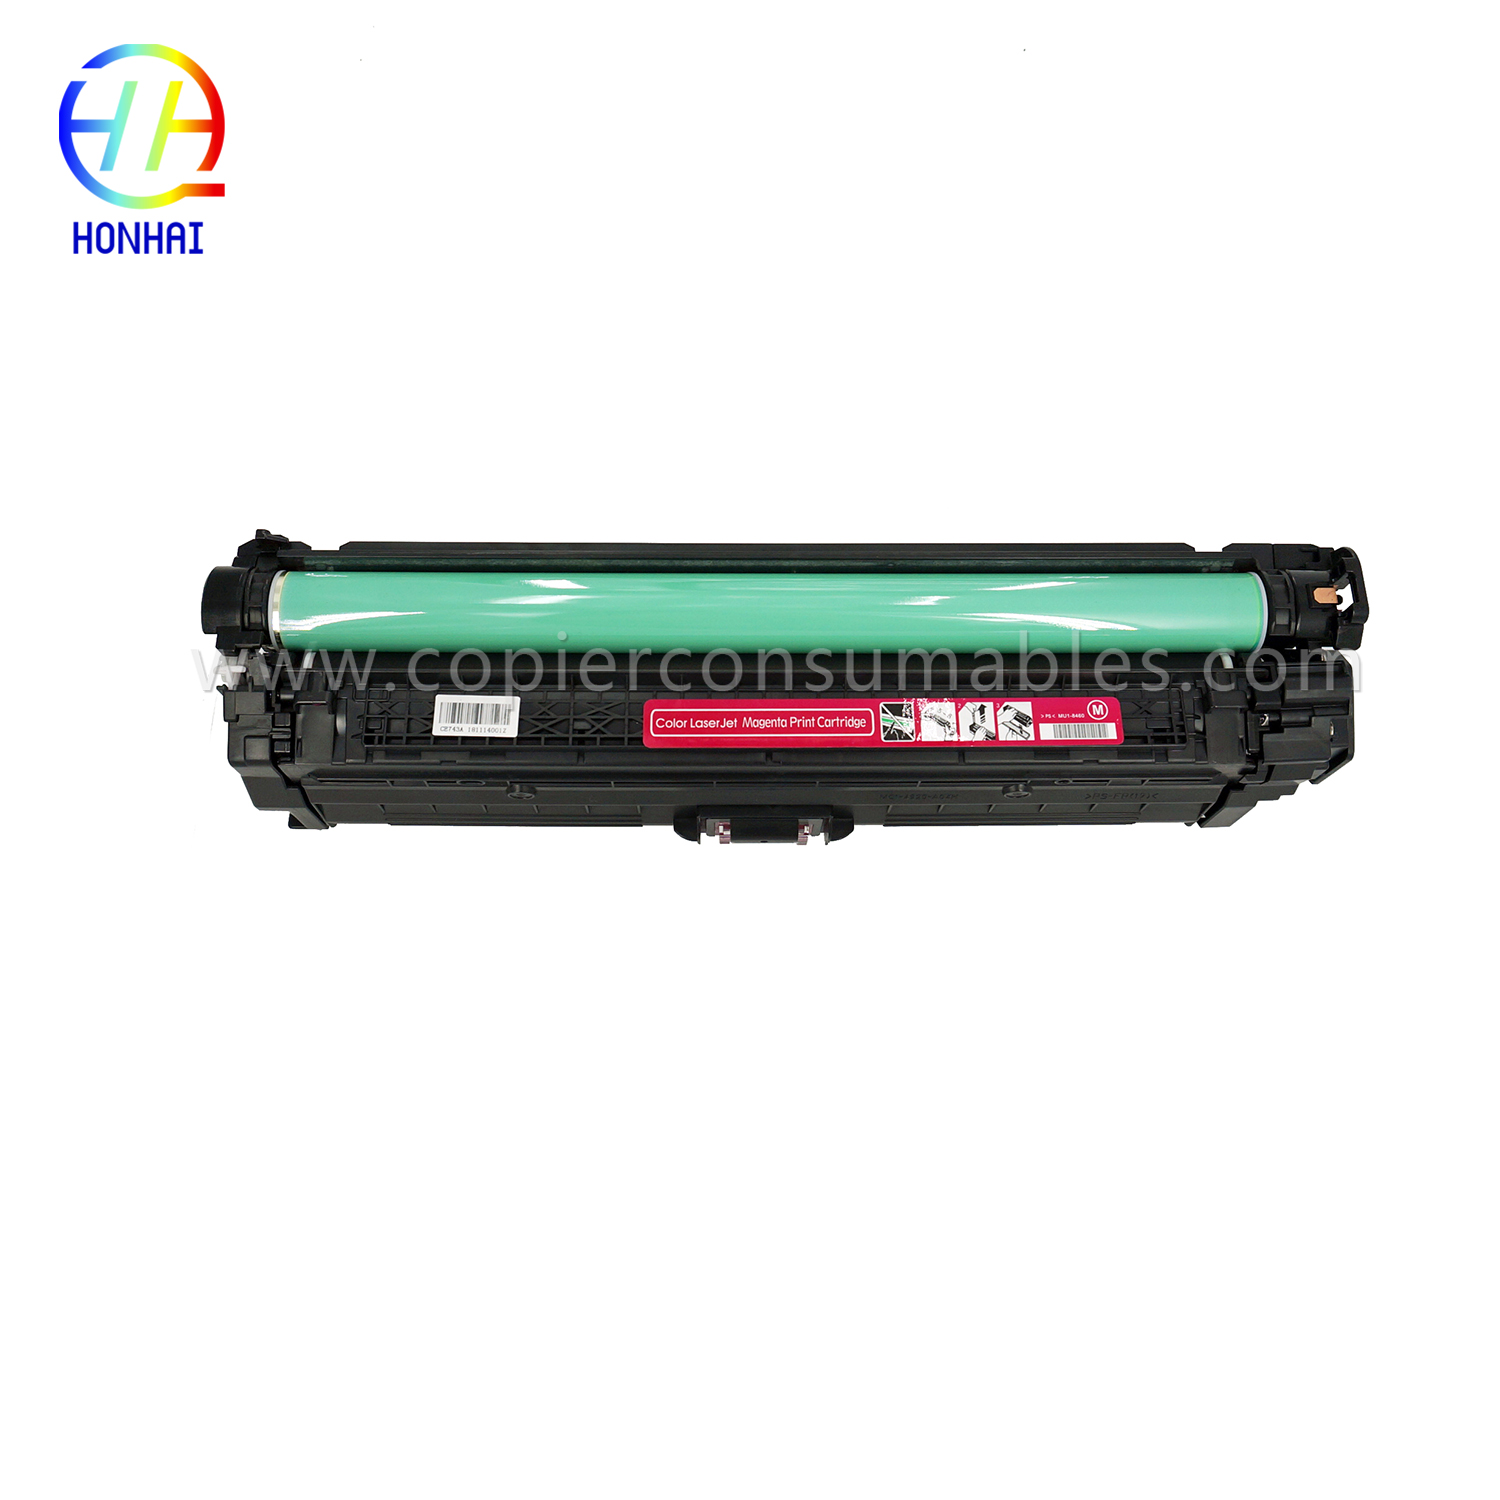 ตลับหมึก HP Color LaserJet Pro CP5025 CP5220 CP5225 (CE743A 307A) (4) เพิ่มเติม